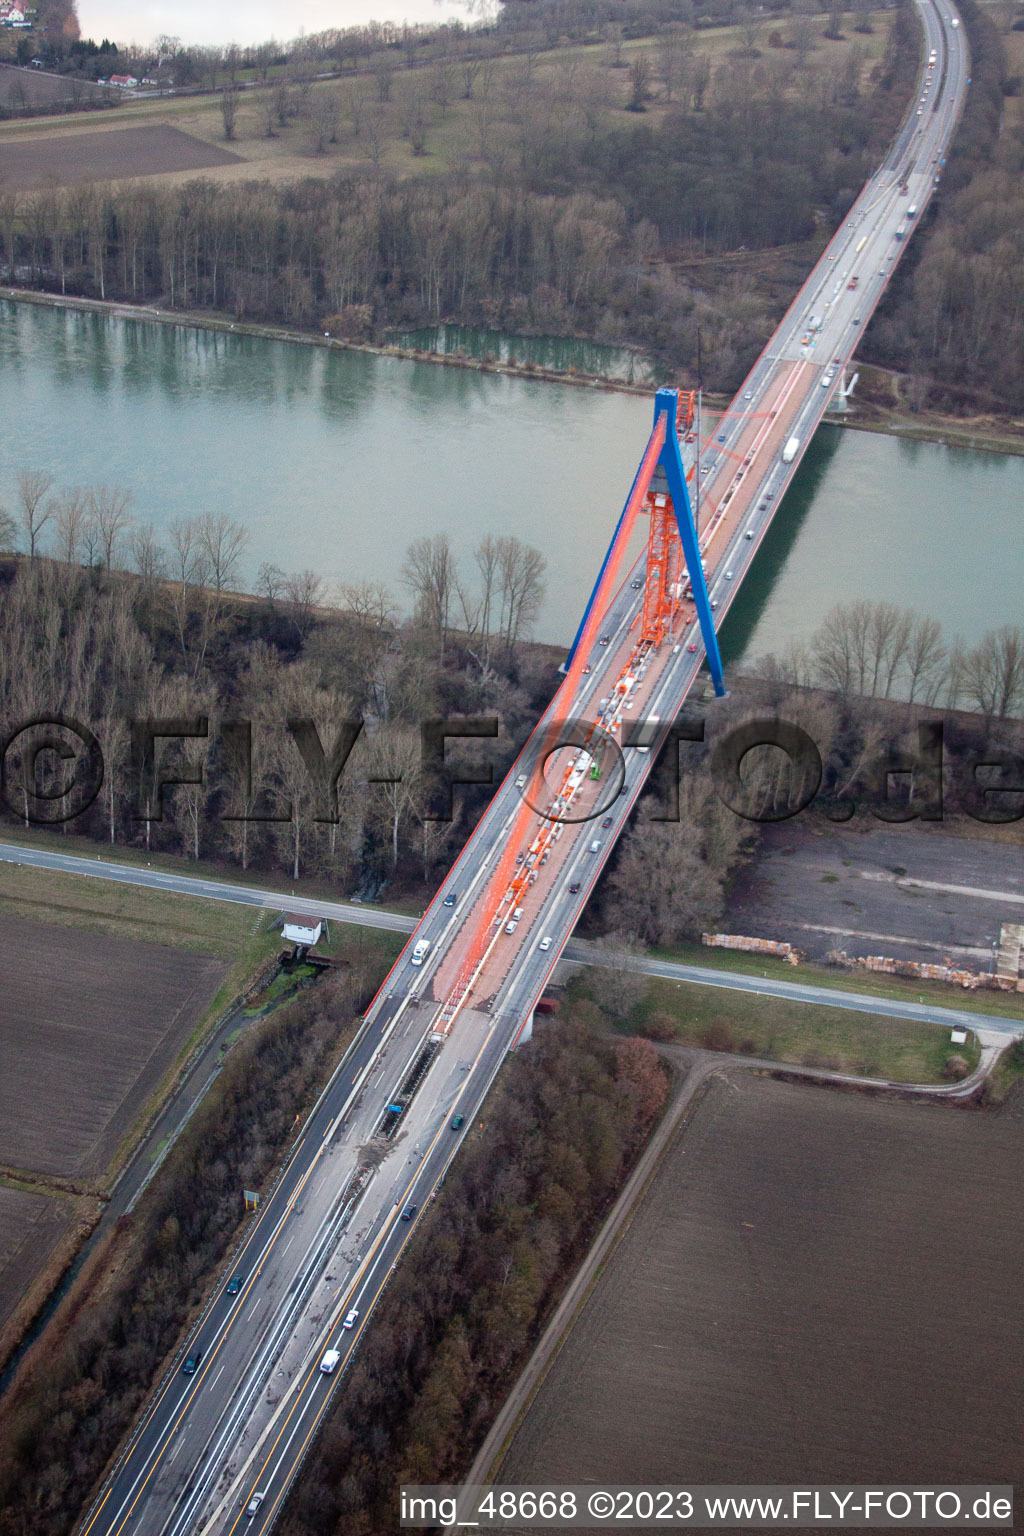 Vue oblique de Chantier de construction d'un pont routier à Speyer dans le département Rhénanie-Palatinat, Allemagne